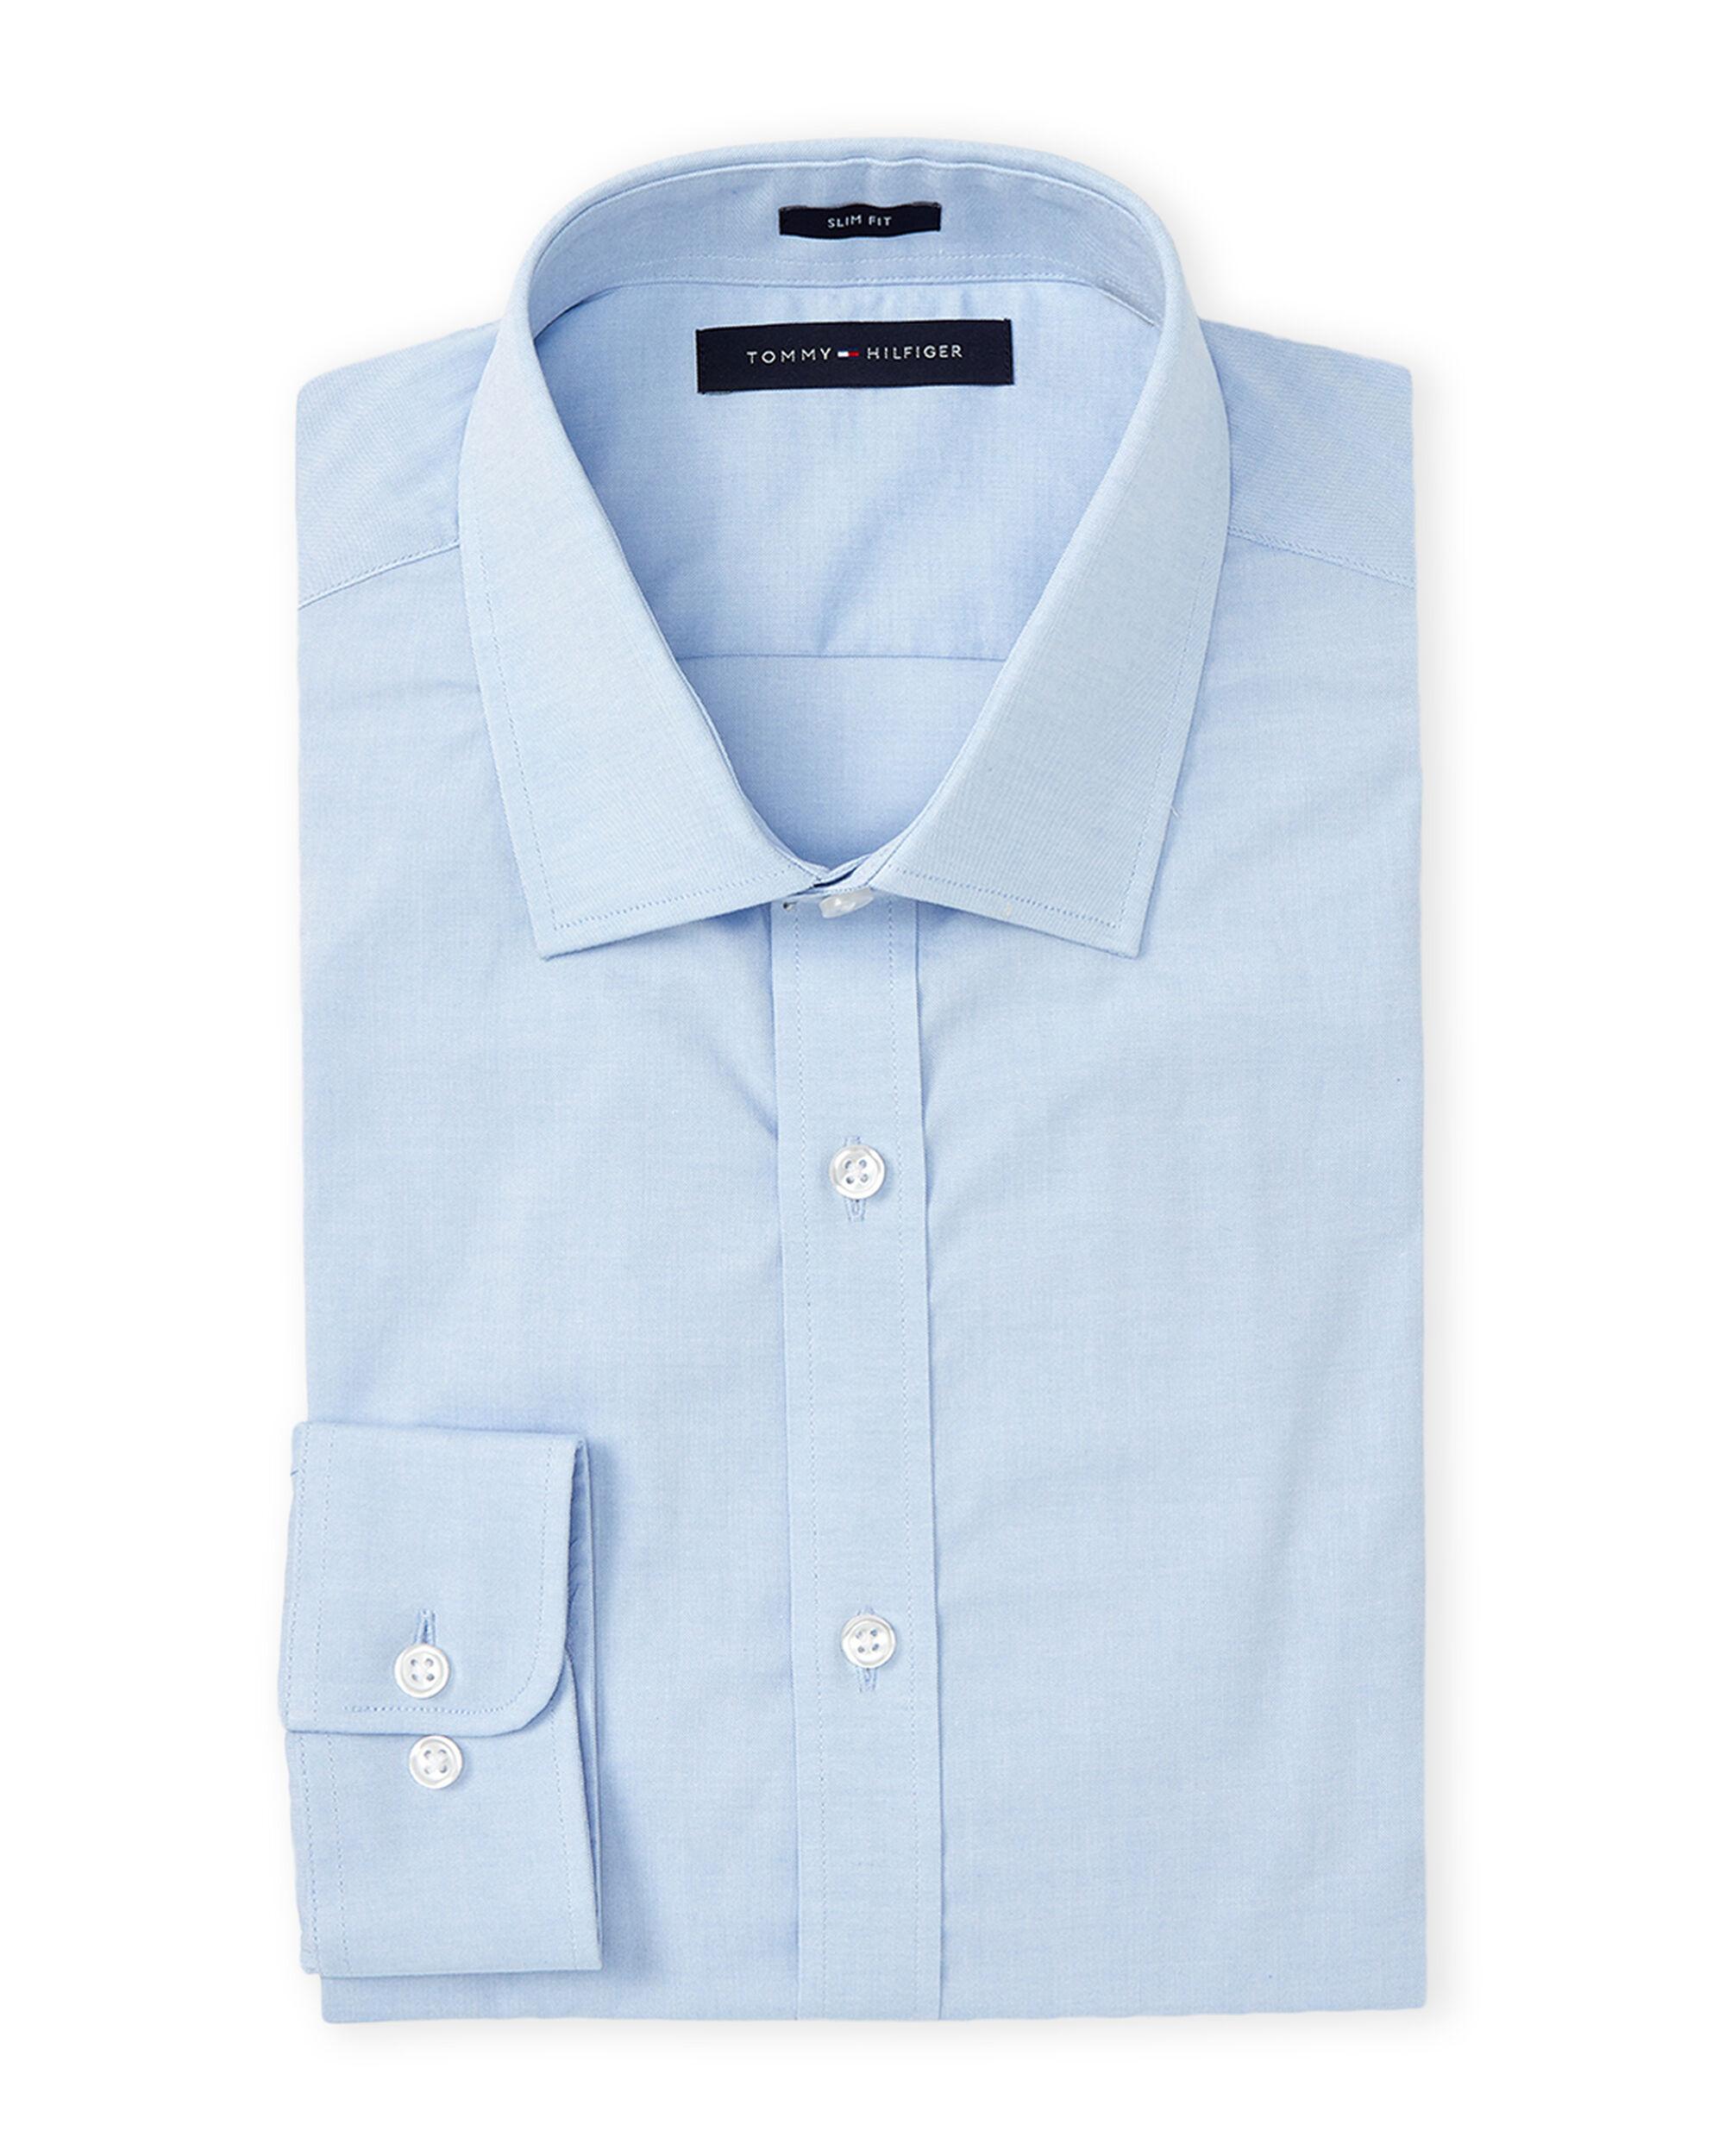 Tommy Hilfiger Cotton Blue Mist Solid Slim Fit Dress Shirt for Men - Lyst